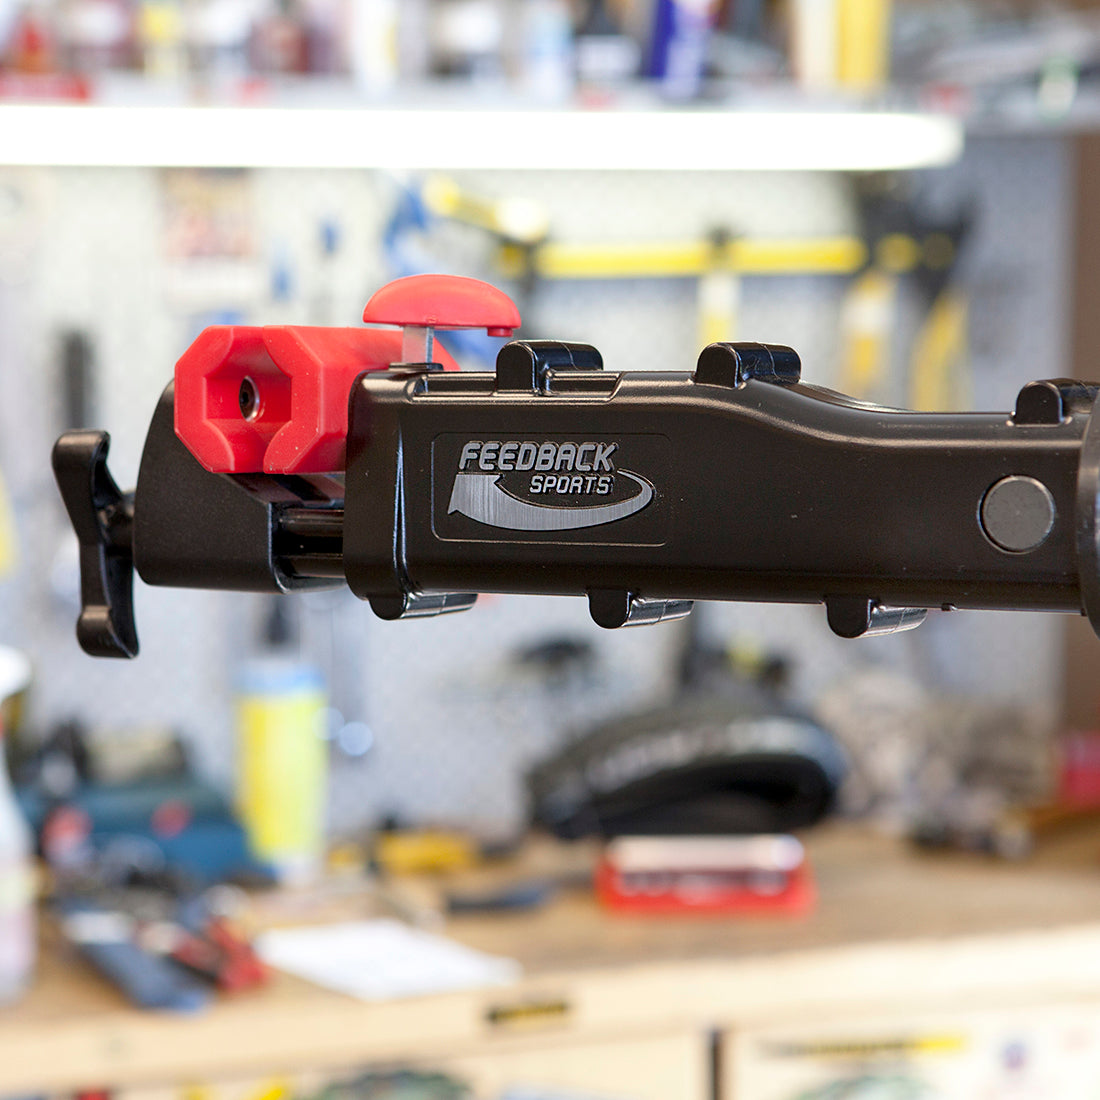 Bike repair stand clamp jaw in close up in bike shop setting.